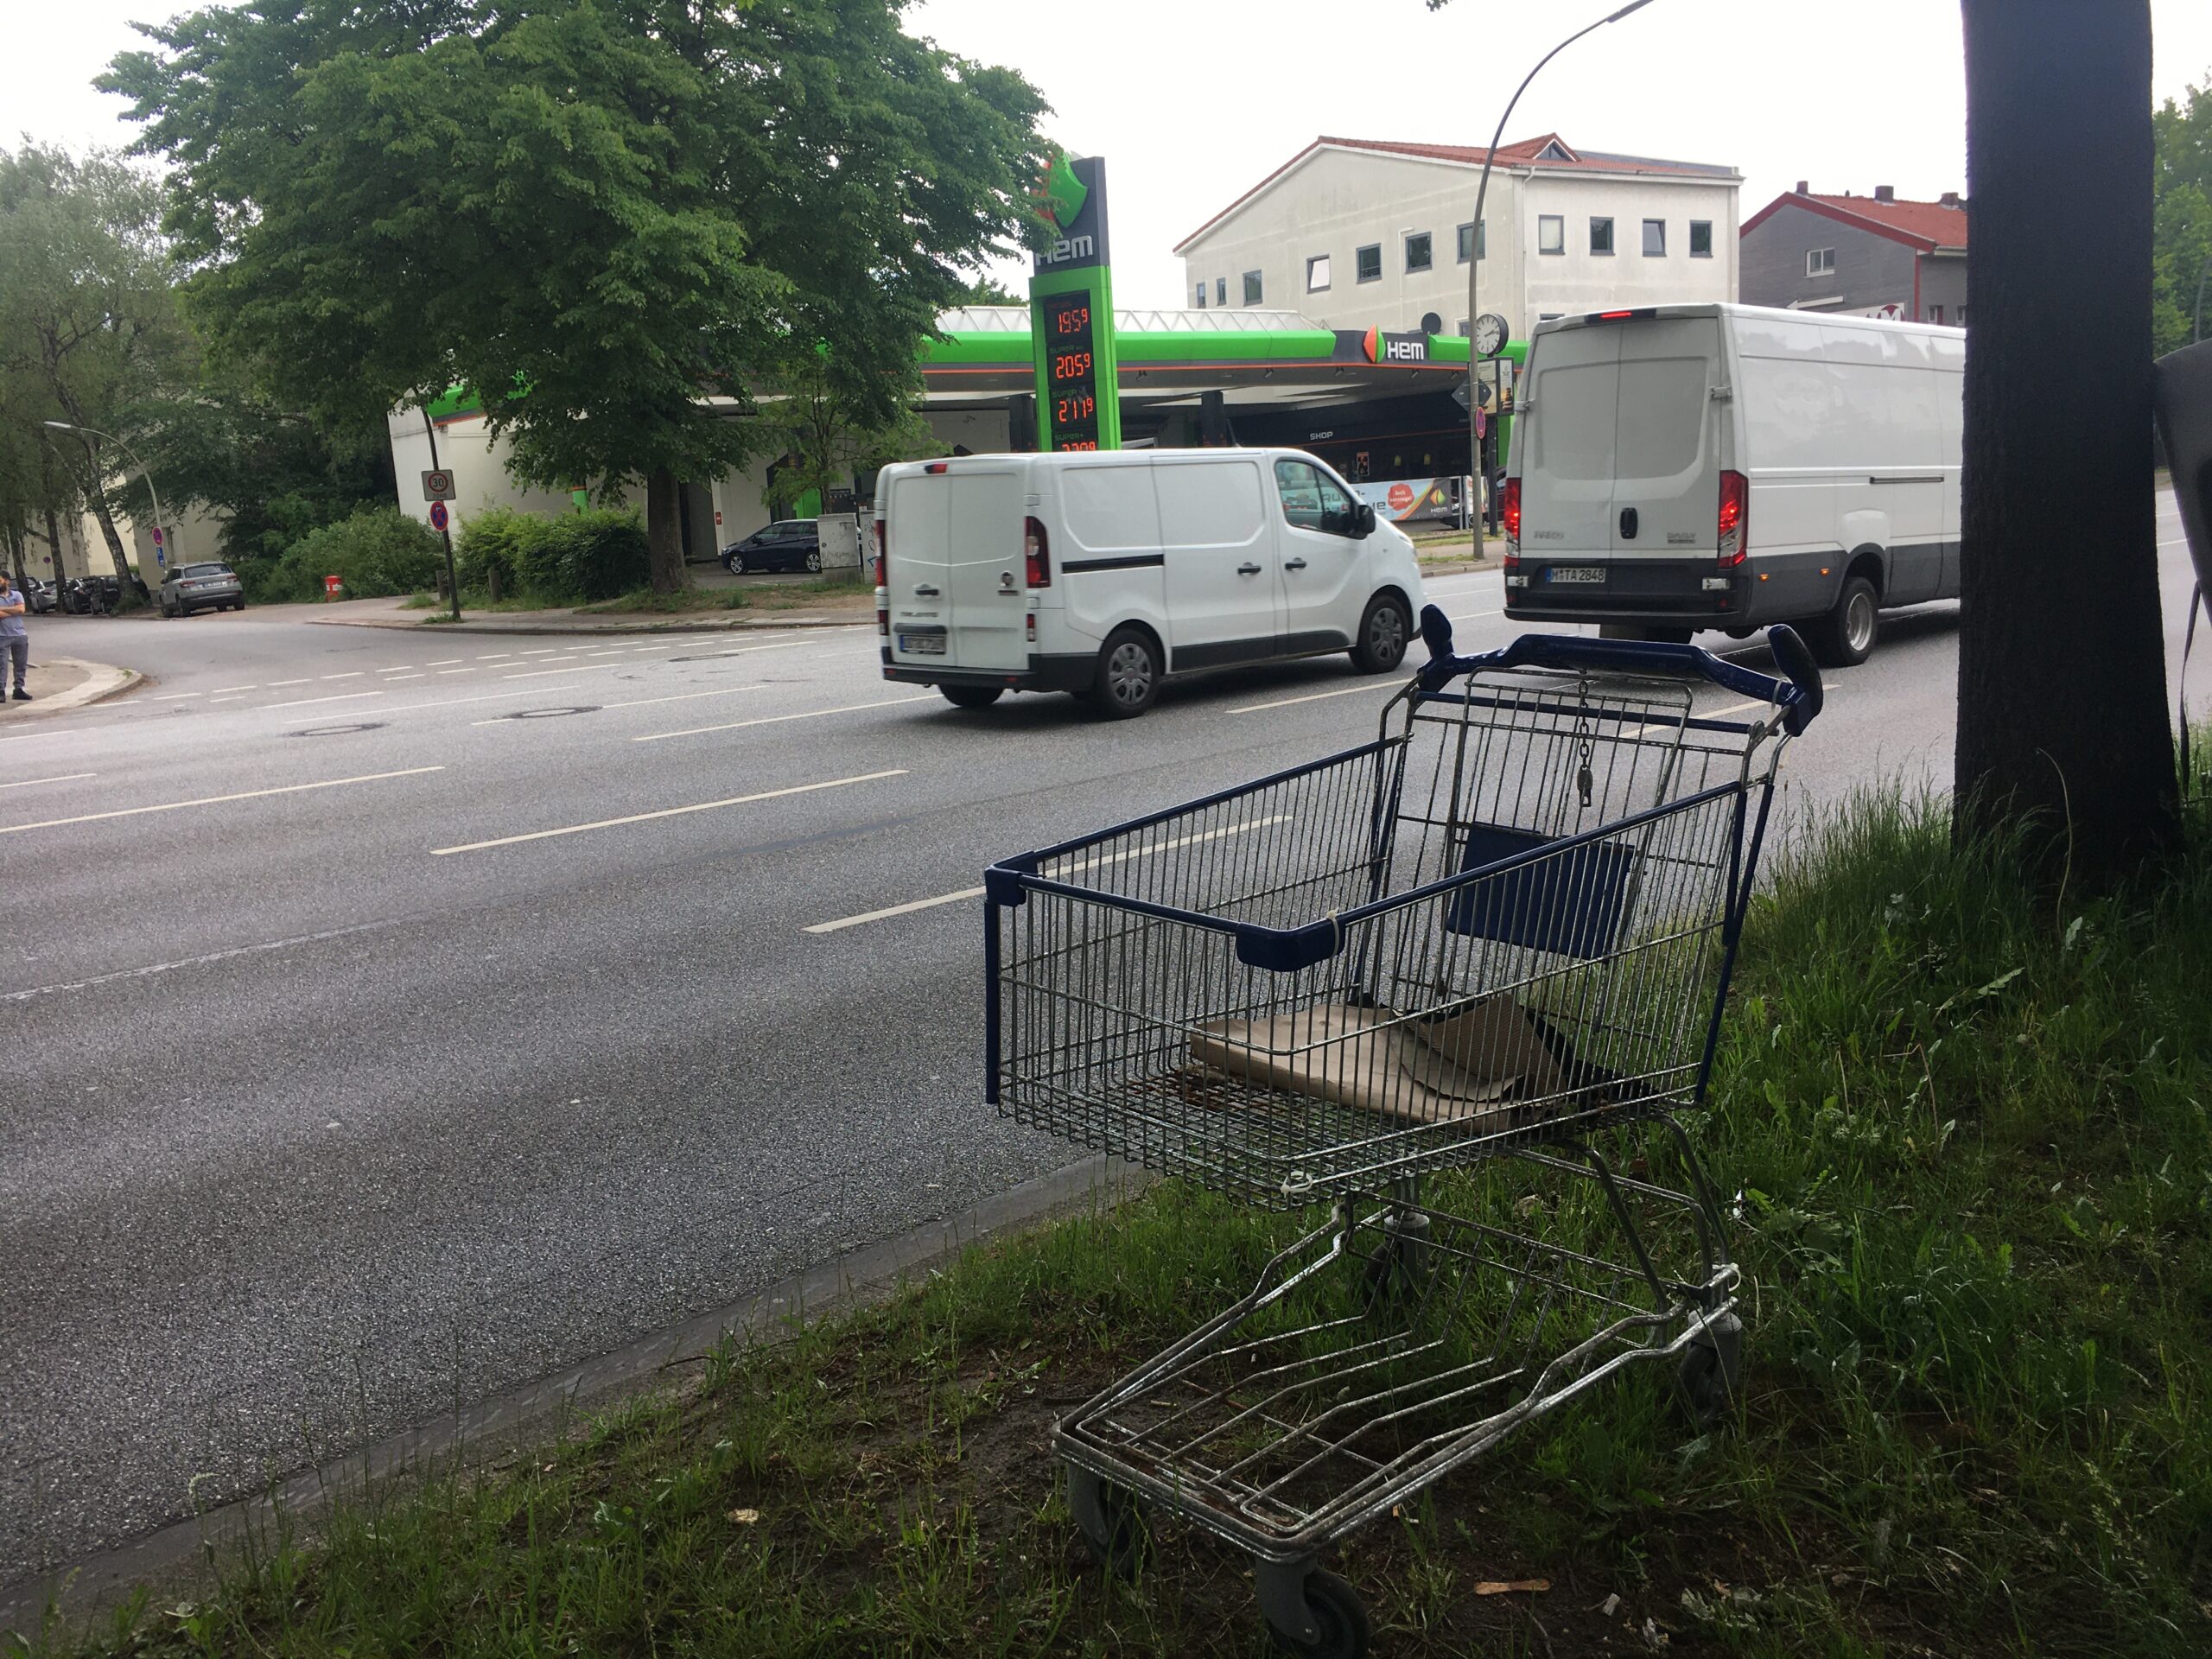 Ärgernis: Gestohlene Einkaufswagen werden am Straßenrand abgestellt – wie hier an der Kieler Straße.